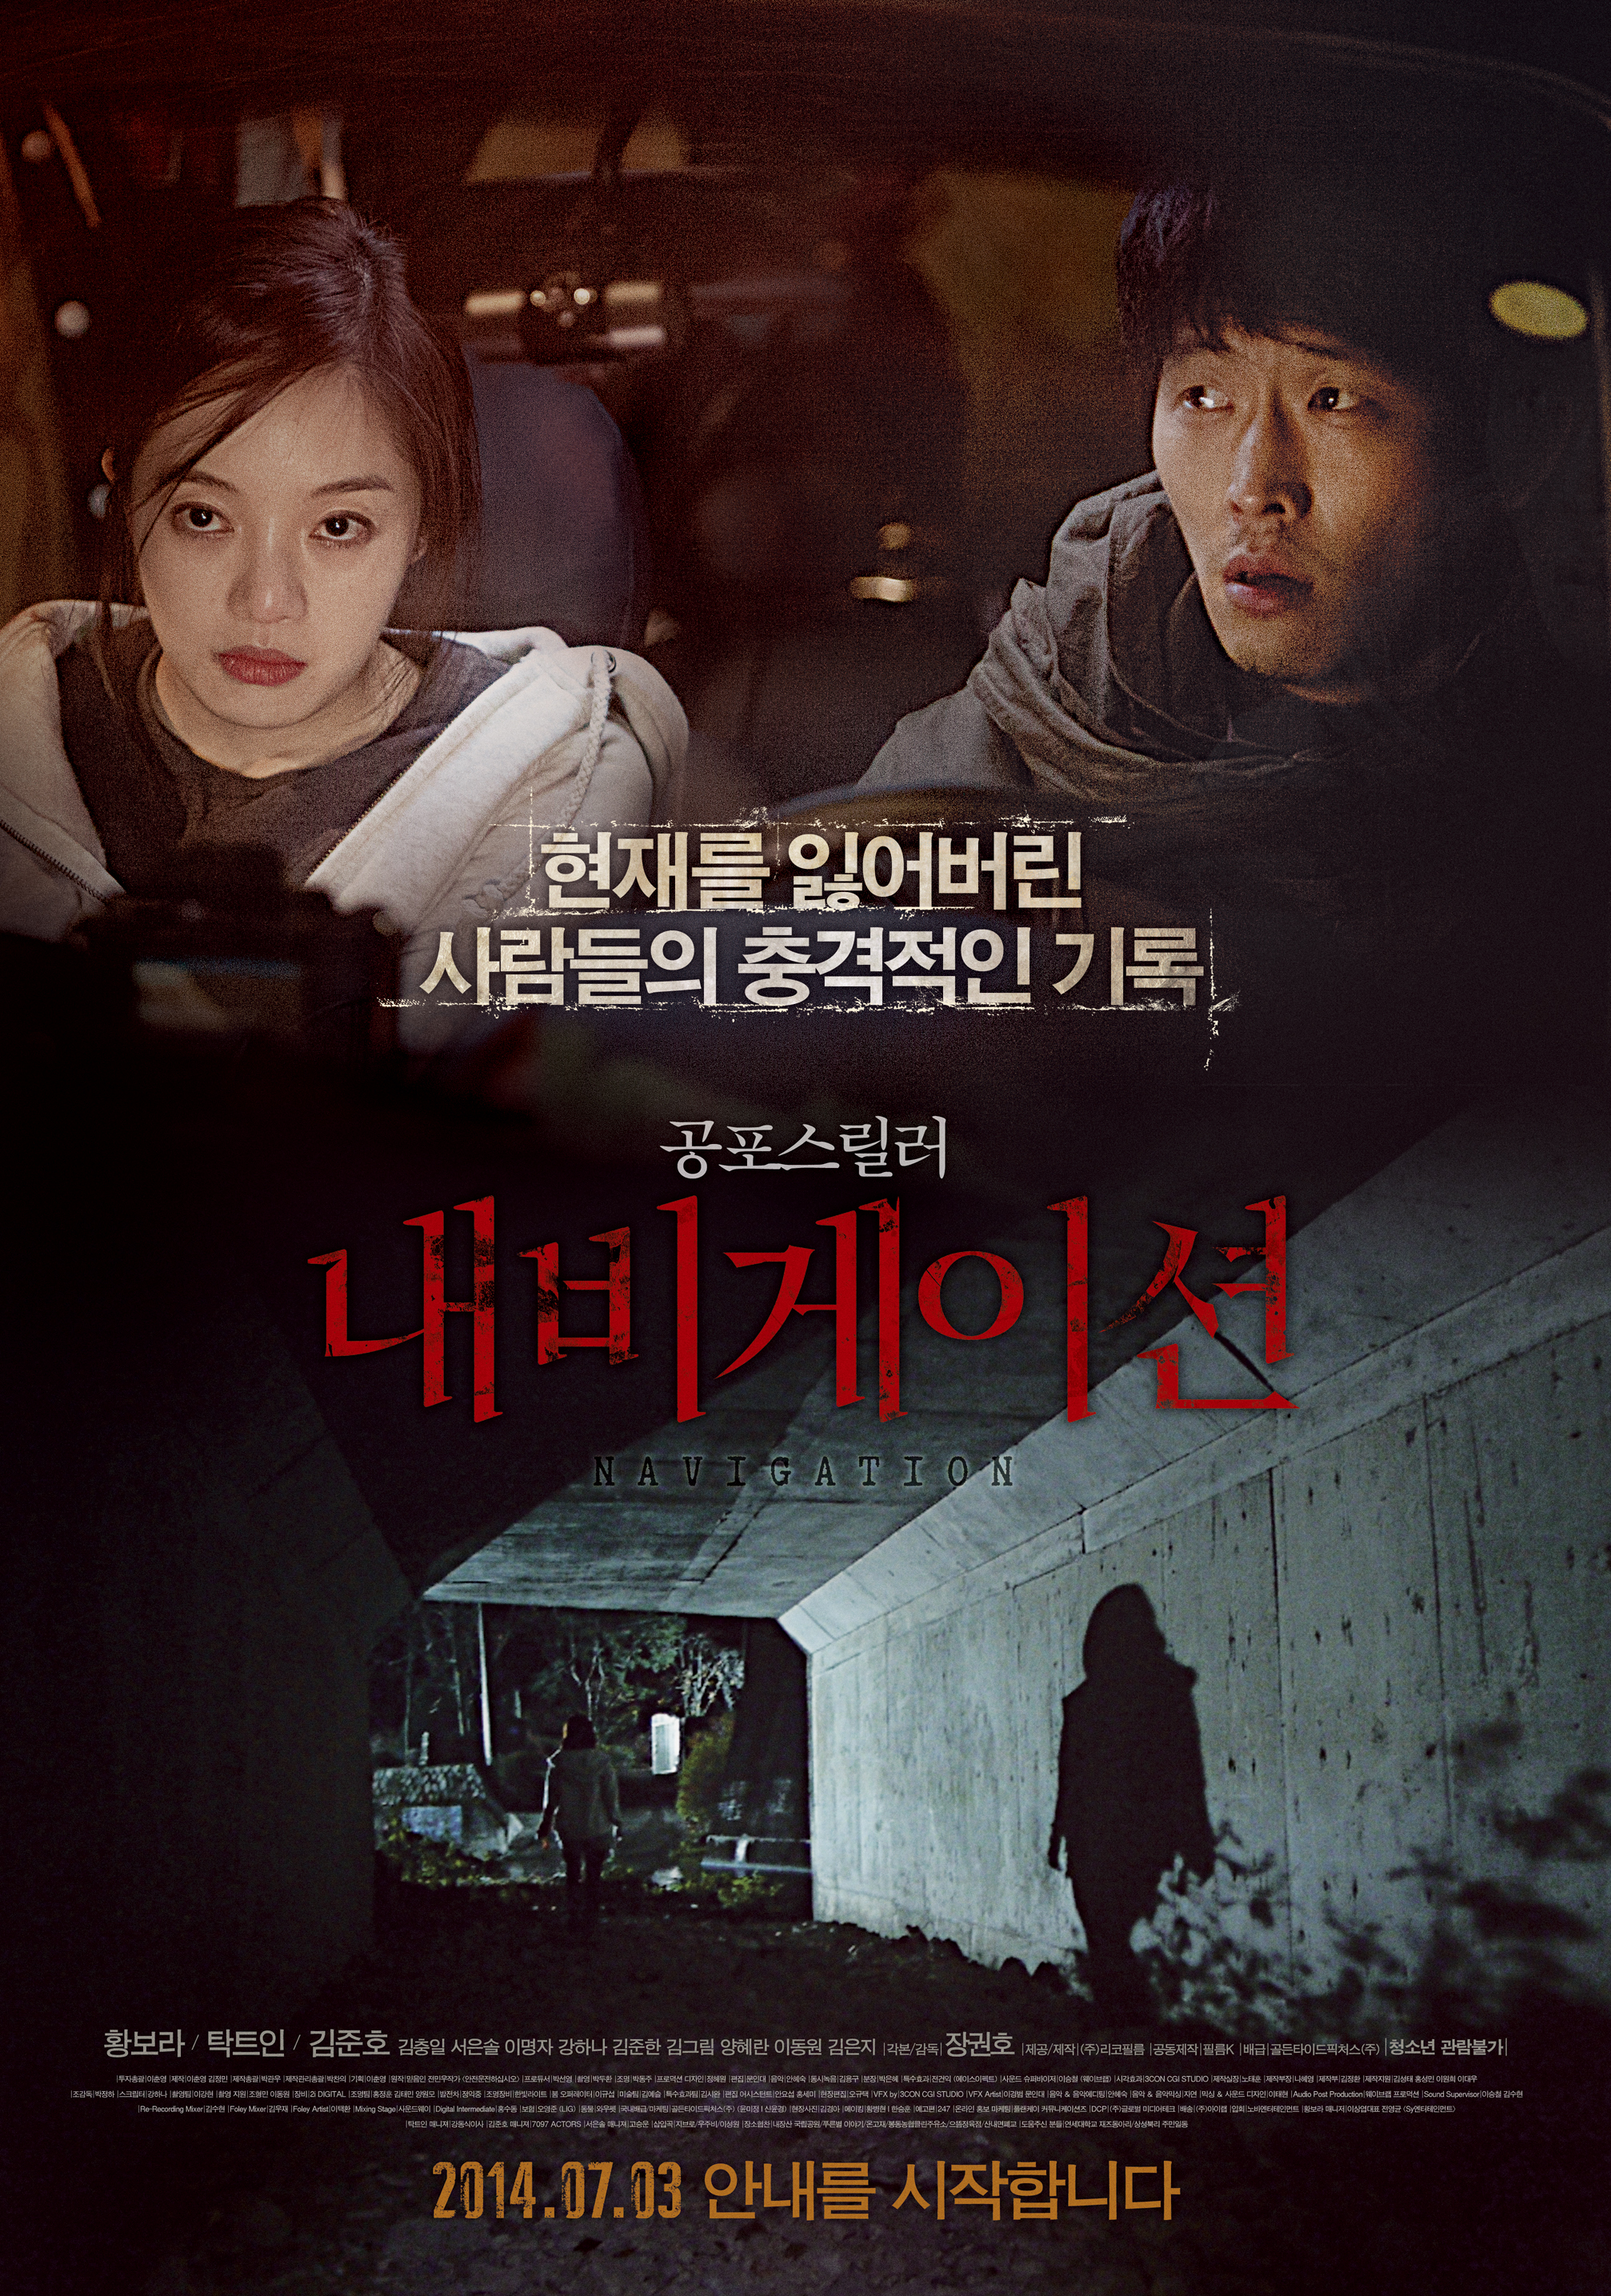 배우 김준호 안면마비 소식에 누리꾼도 안타까움을 표했다. ⓒ 영화 '내비게이션' 포스터